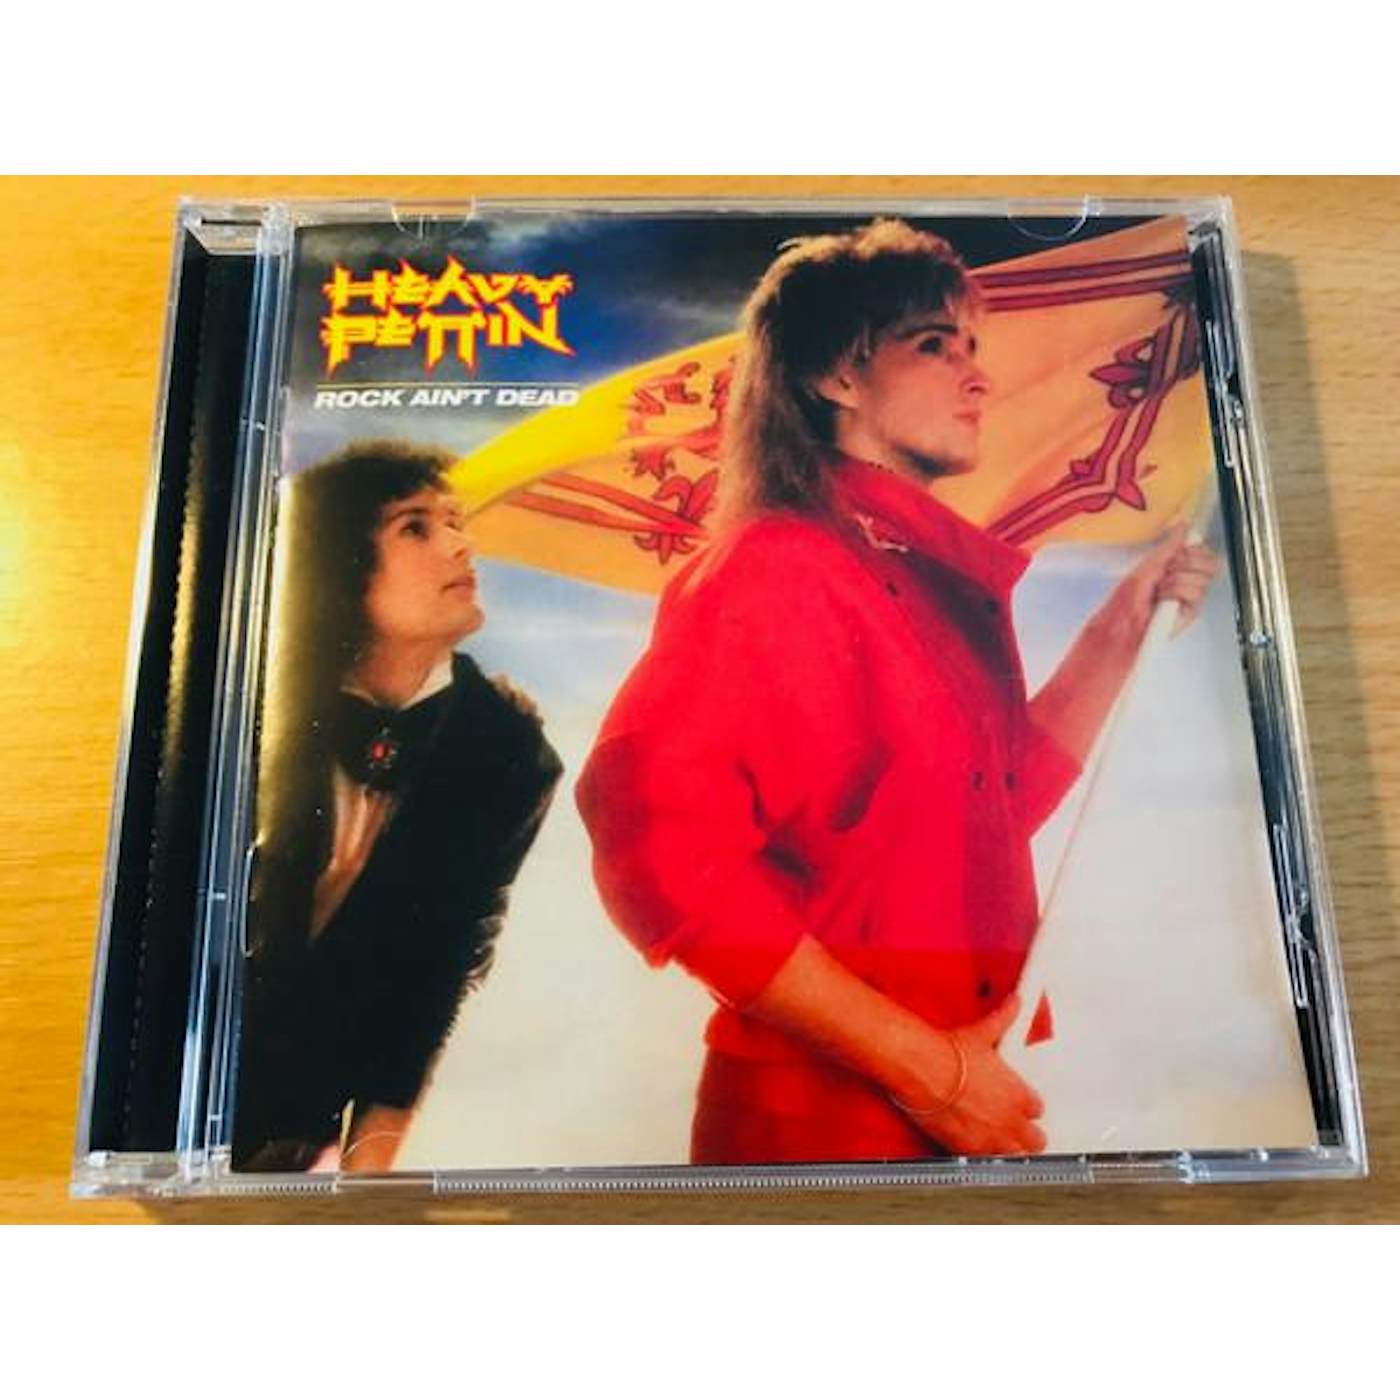 Heavy Pettin ROCK AIN'T DEAD CD